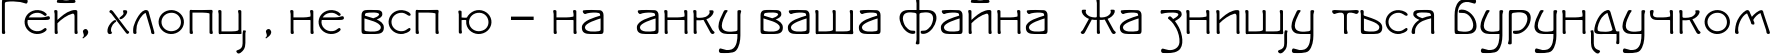 Пример написания шрифтом IsadoraSV TYGRA текста на украинском